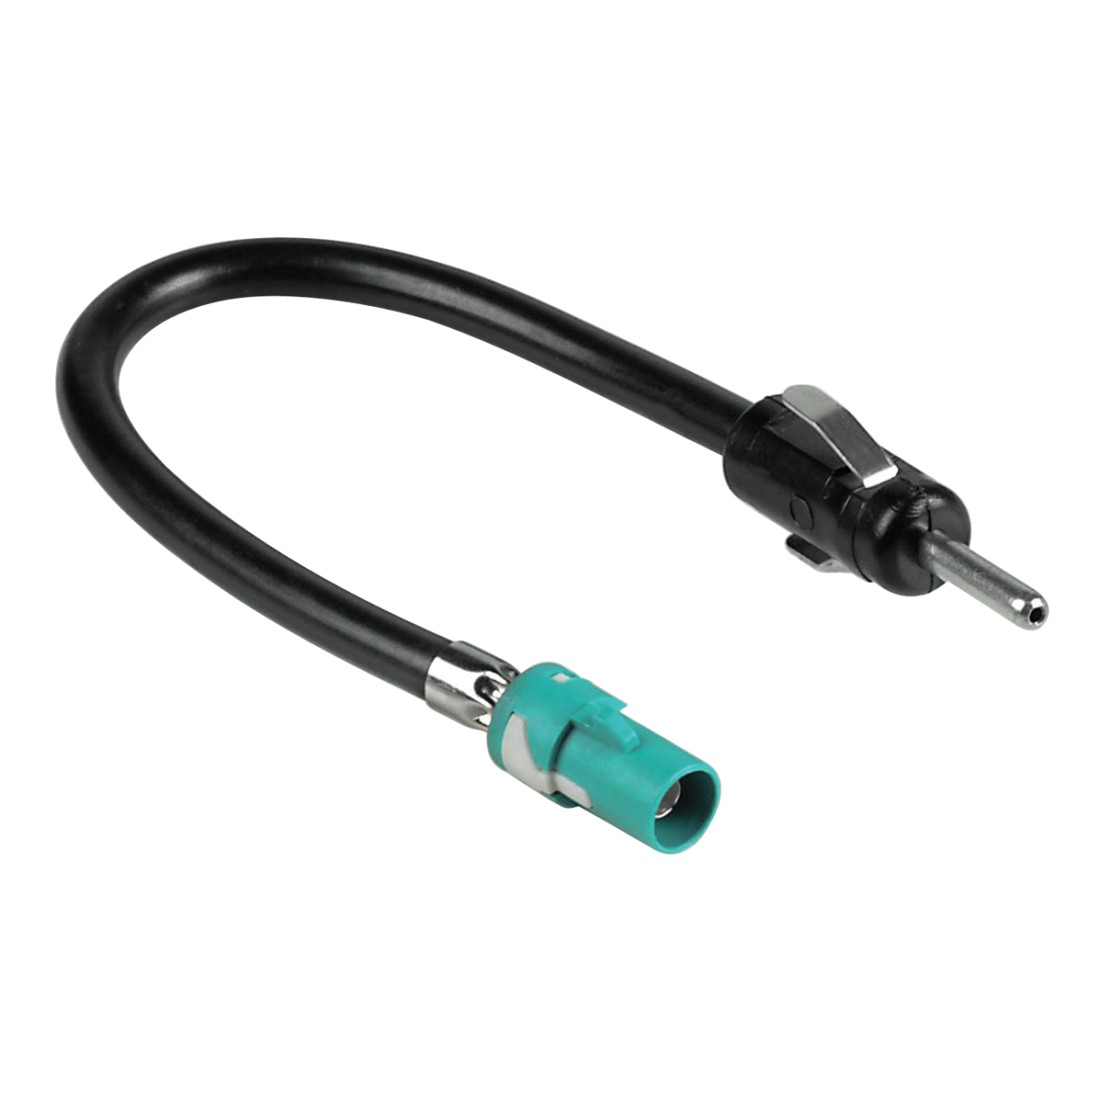 Antennen-Adapter für Audi/Mercedes/Seat/Skoda/VW, auf DIN